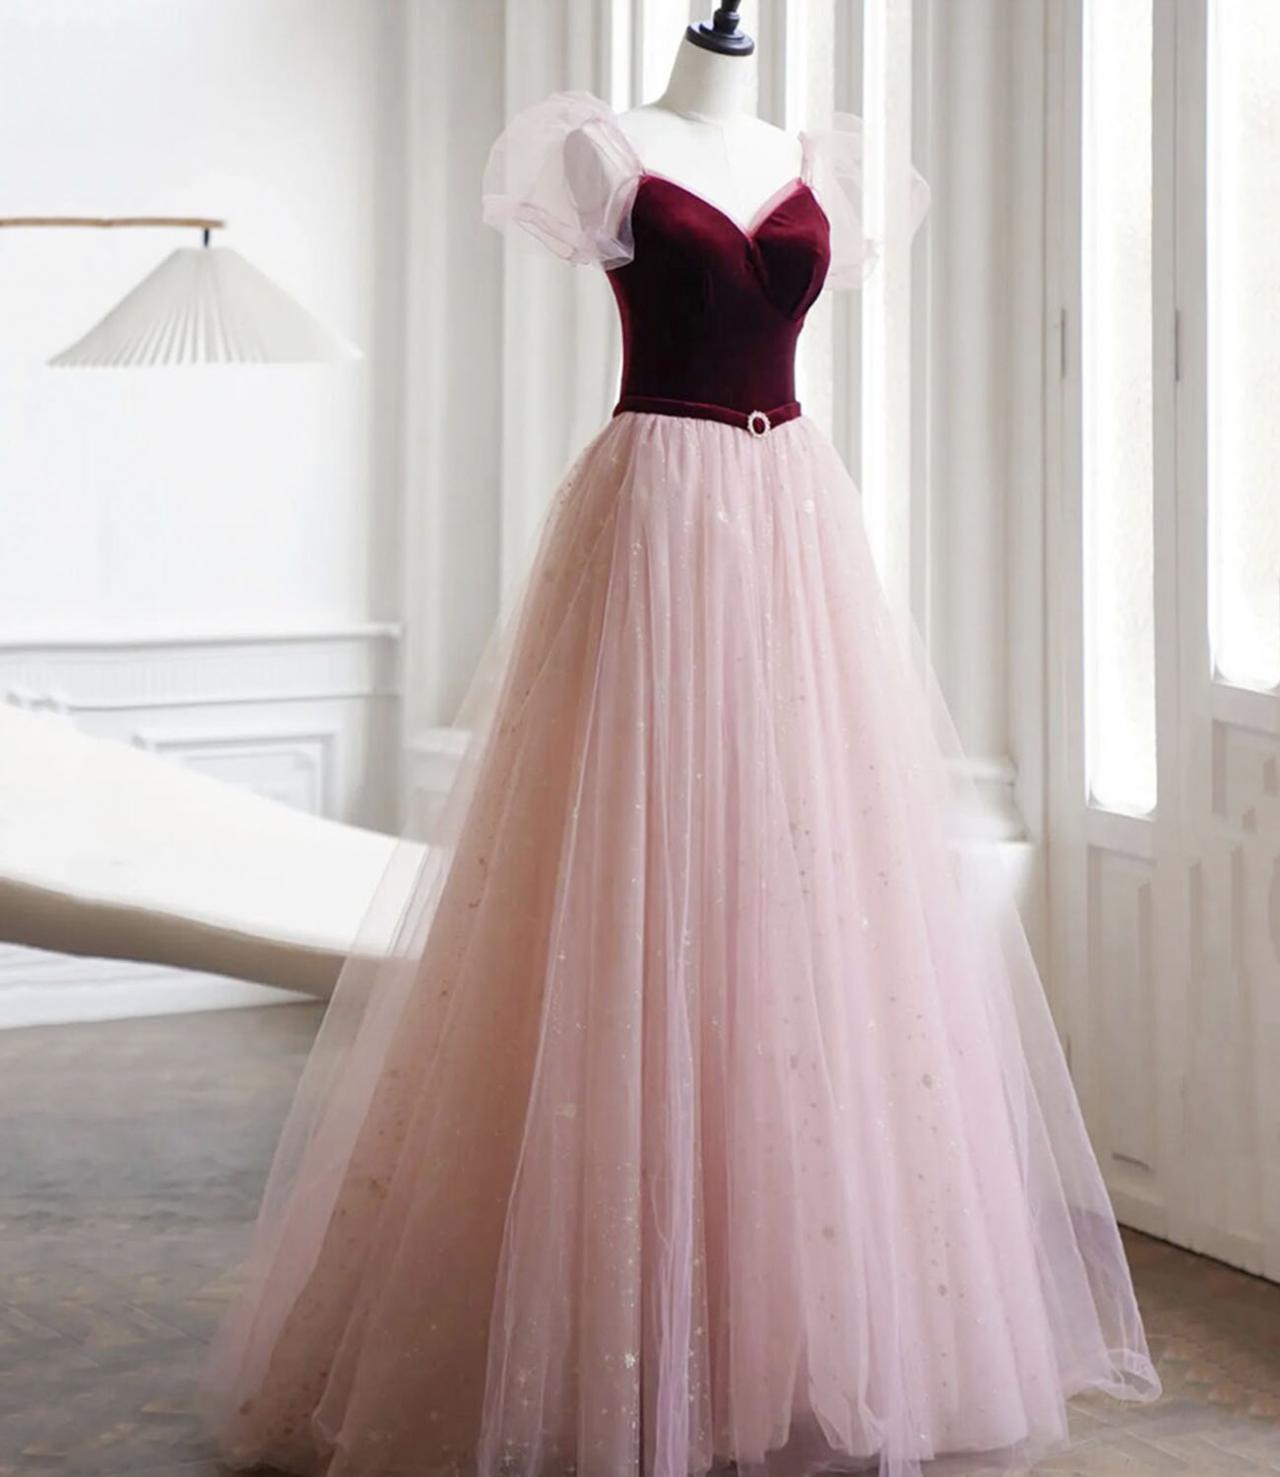 Cute Velvet Tulle Long Prom Dress Evening Dress